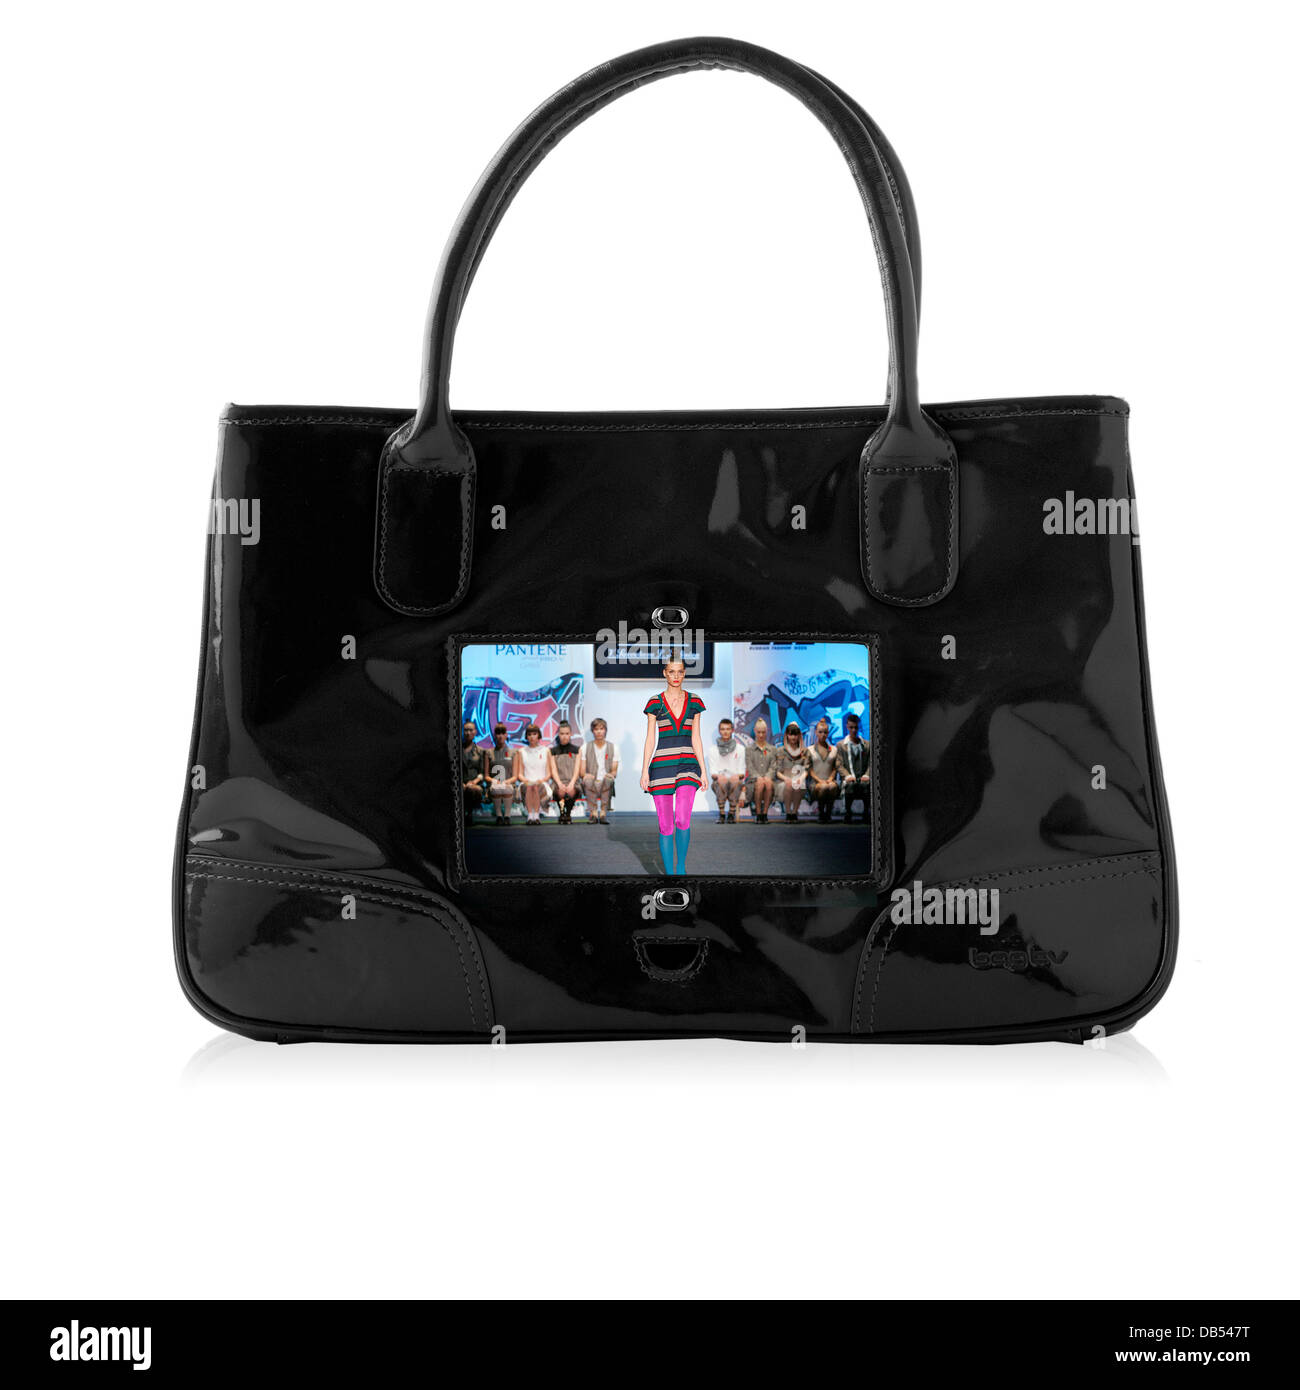 Jetzt können Sie den Fernseher in Ihrer Handtasche aufnehmen! Für die Frau, die immer auf dem Sprung ist, ist die Tasche-TV eine innovative Fashion-accessory-slash-portable-video-player in einem. Unter einer transparenten Schild auf der einen Seite der Tasche liegt die 7-Zoll-Bildschirm, integ Stockfoto